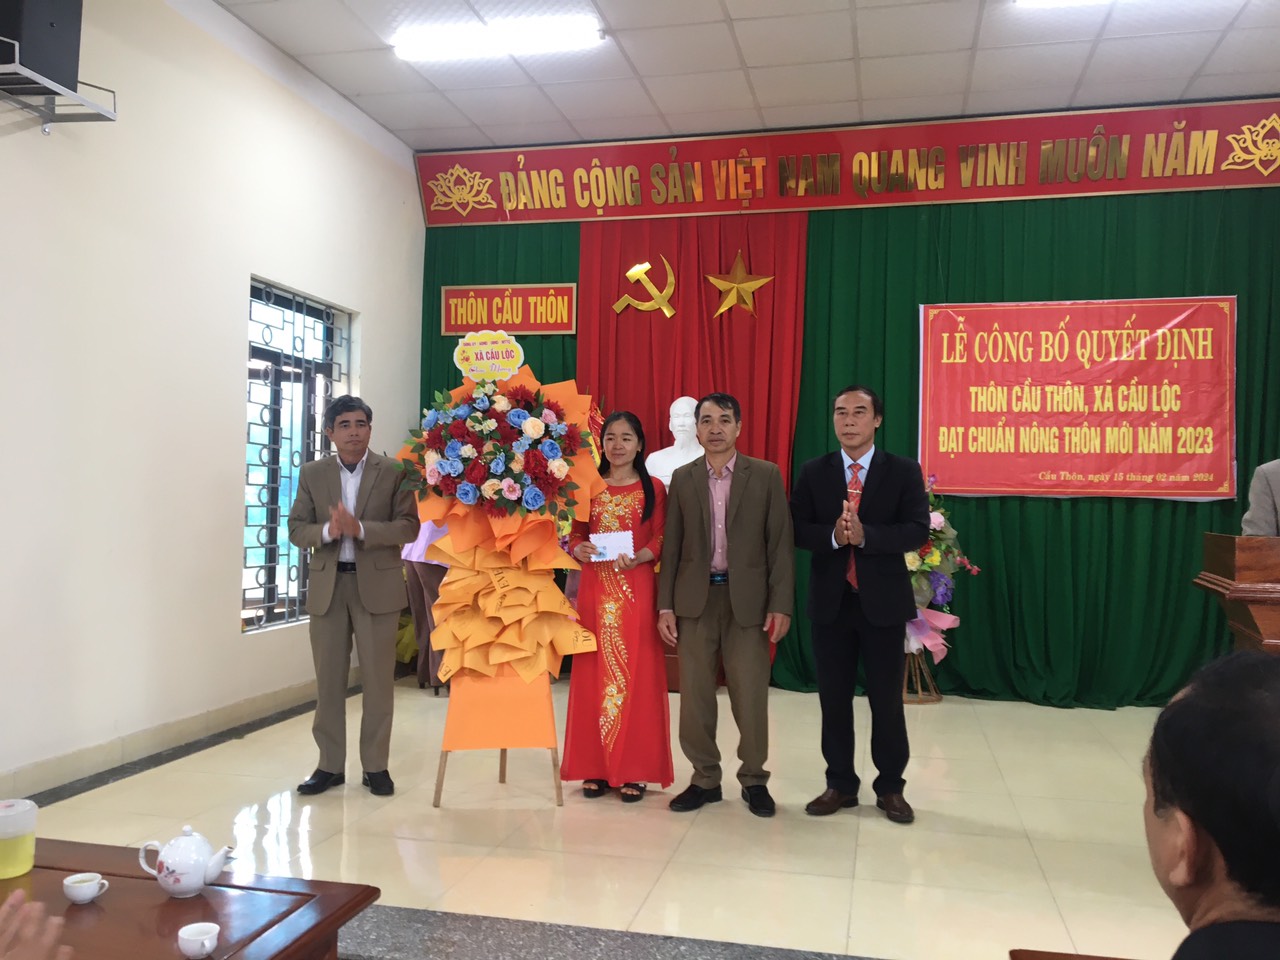 Thôn Cầu Thôn, xã Cầu Lộc, huyện Hậu Lộc tổ chức Lễ công bố thôn đạt chuẩn nông thôn mới năm 2023